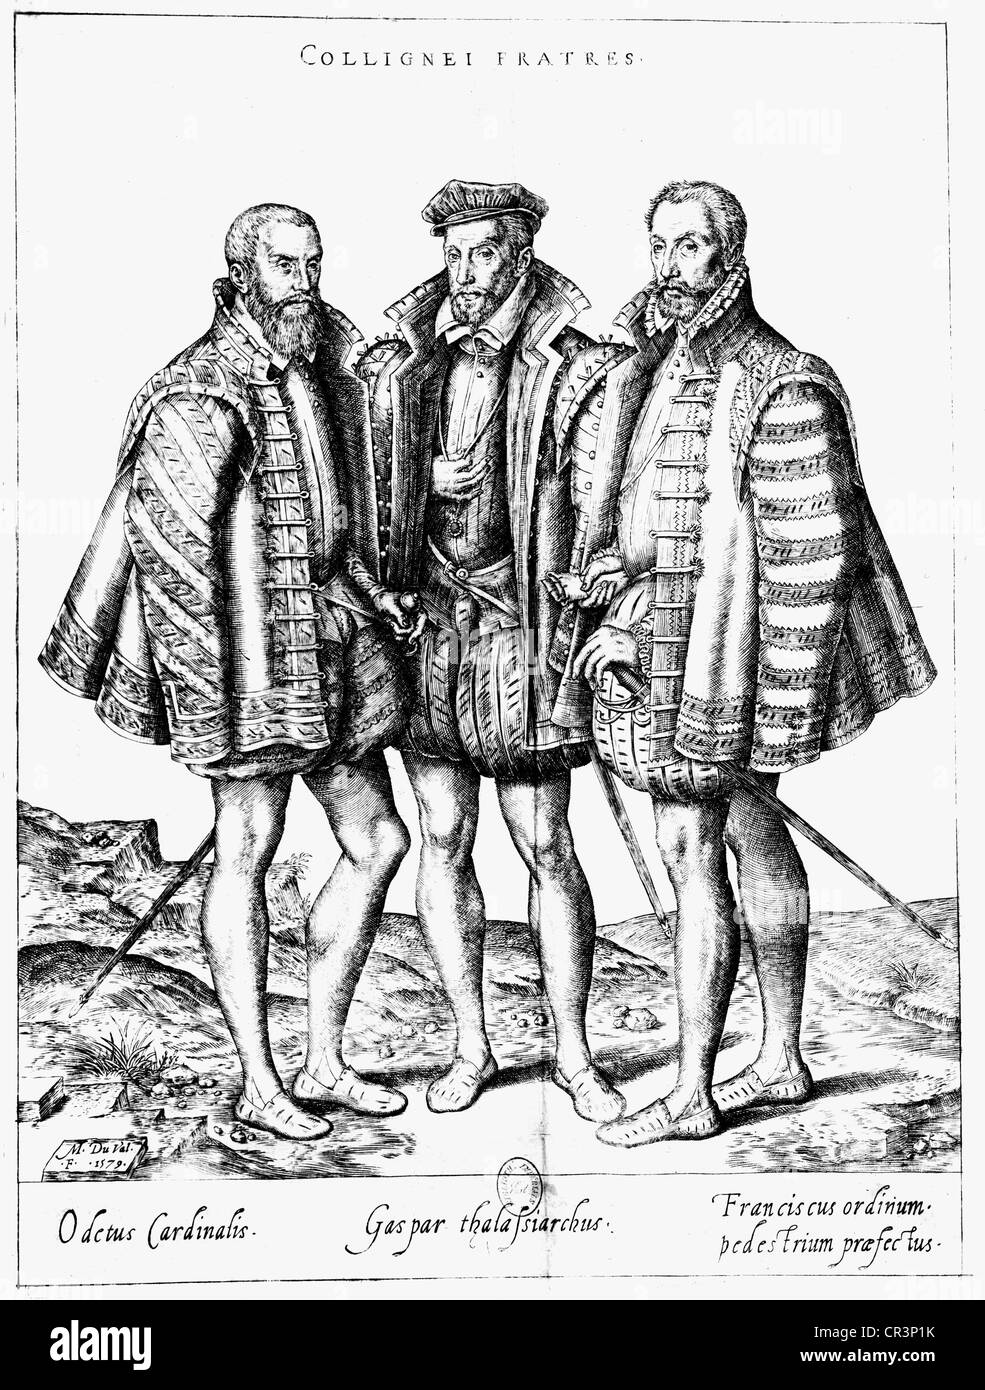 Coligny, Gaspard II de, señor de Chatillon, 16.2.1519 - 24.8.1572, político francés, almirante de Francia 1552 - 1572, con sus hermanos Odet, Cardenal de Chatillion, y Francois d'Andelot, dibujo de Marc Duval, 1579, , Foto de stock